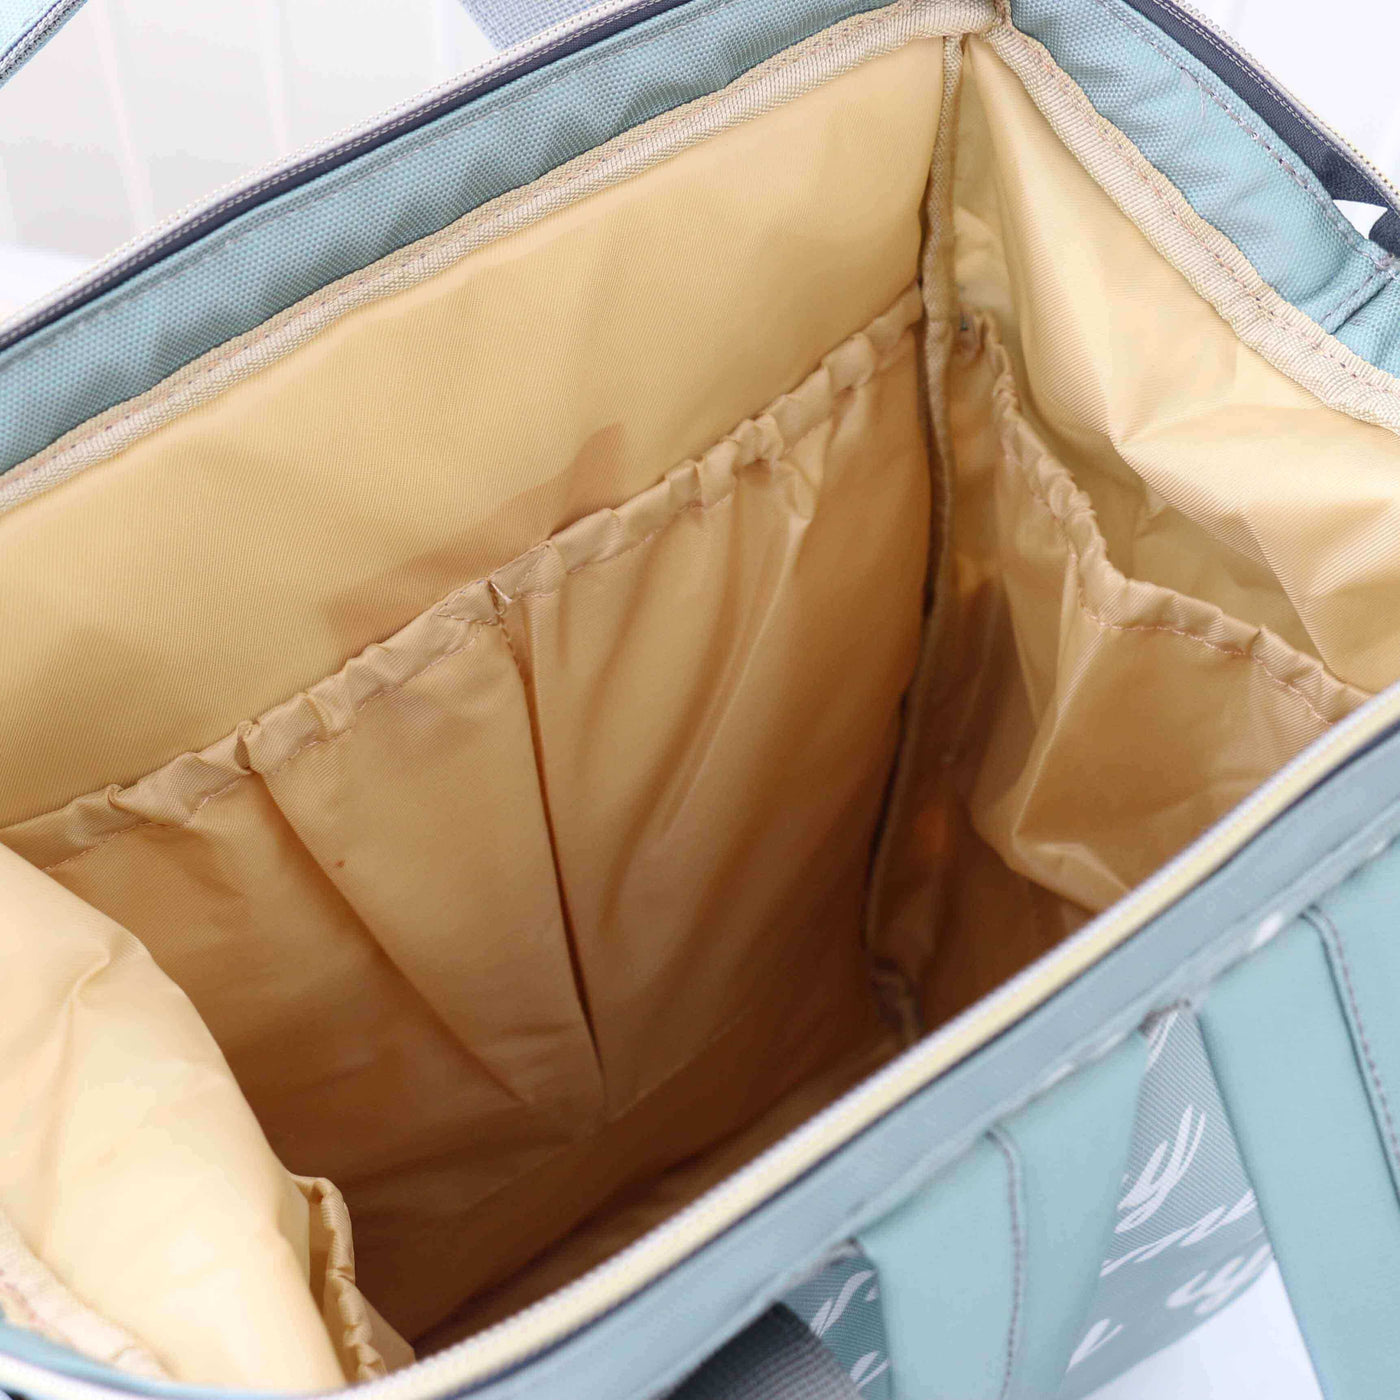 diaper bag backpack tan interior for babies 